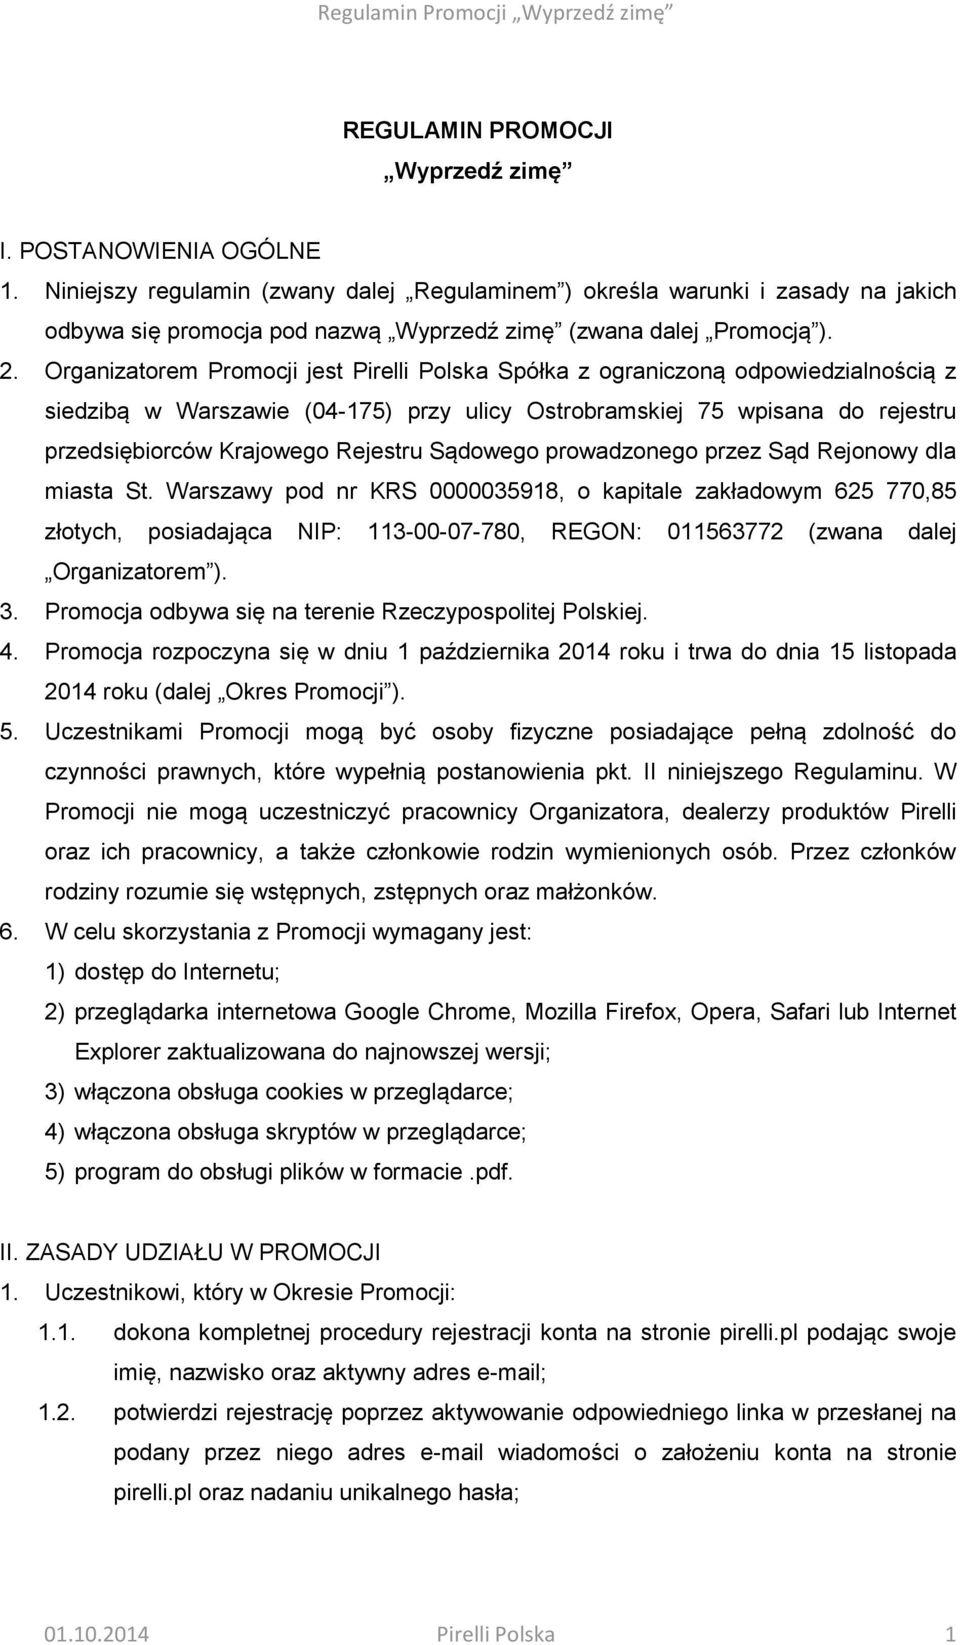 Organizatorem Promocji jest Pirelli Polska Spółka z ograniczoną odpowiedzialnością z siedzibą w Warszawie (04-175) przy ulicy Ostrobramskiej 75 wpisana do rejestru przedsiębiorców Krajowego Rejestru